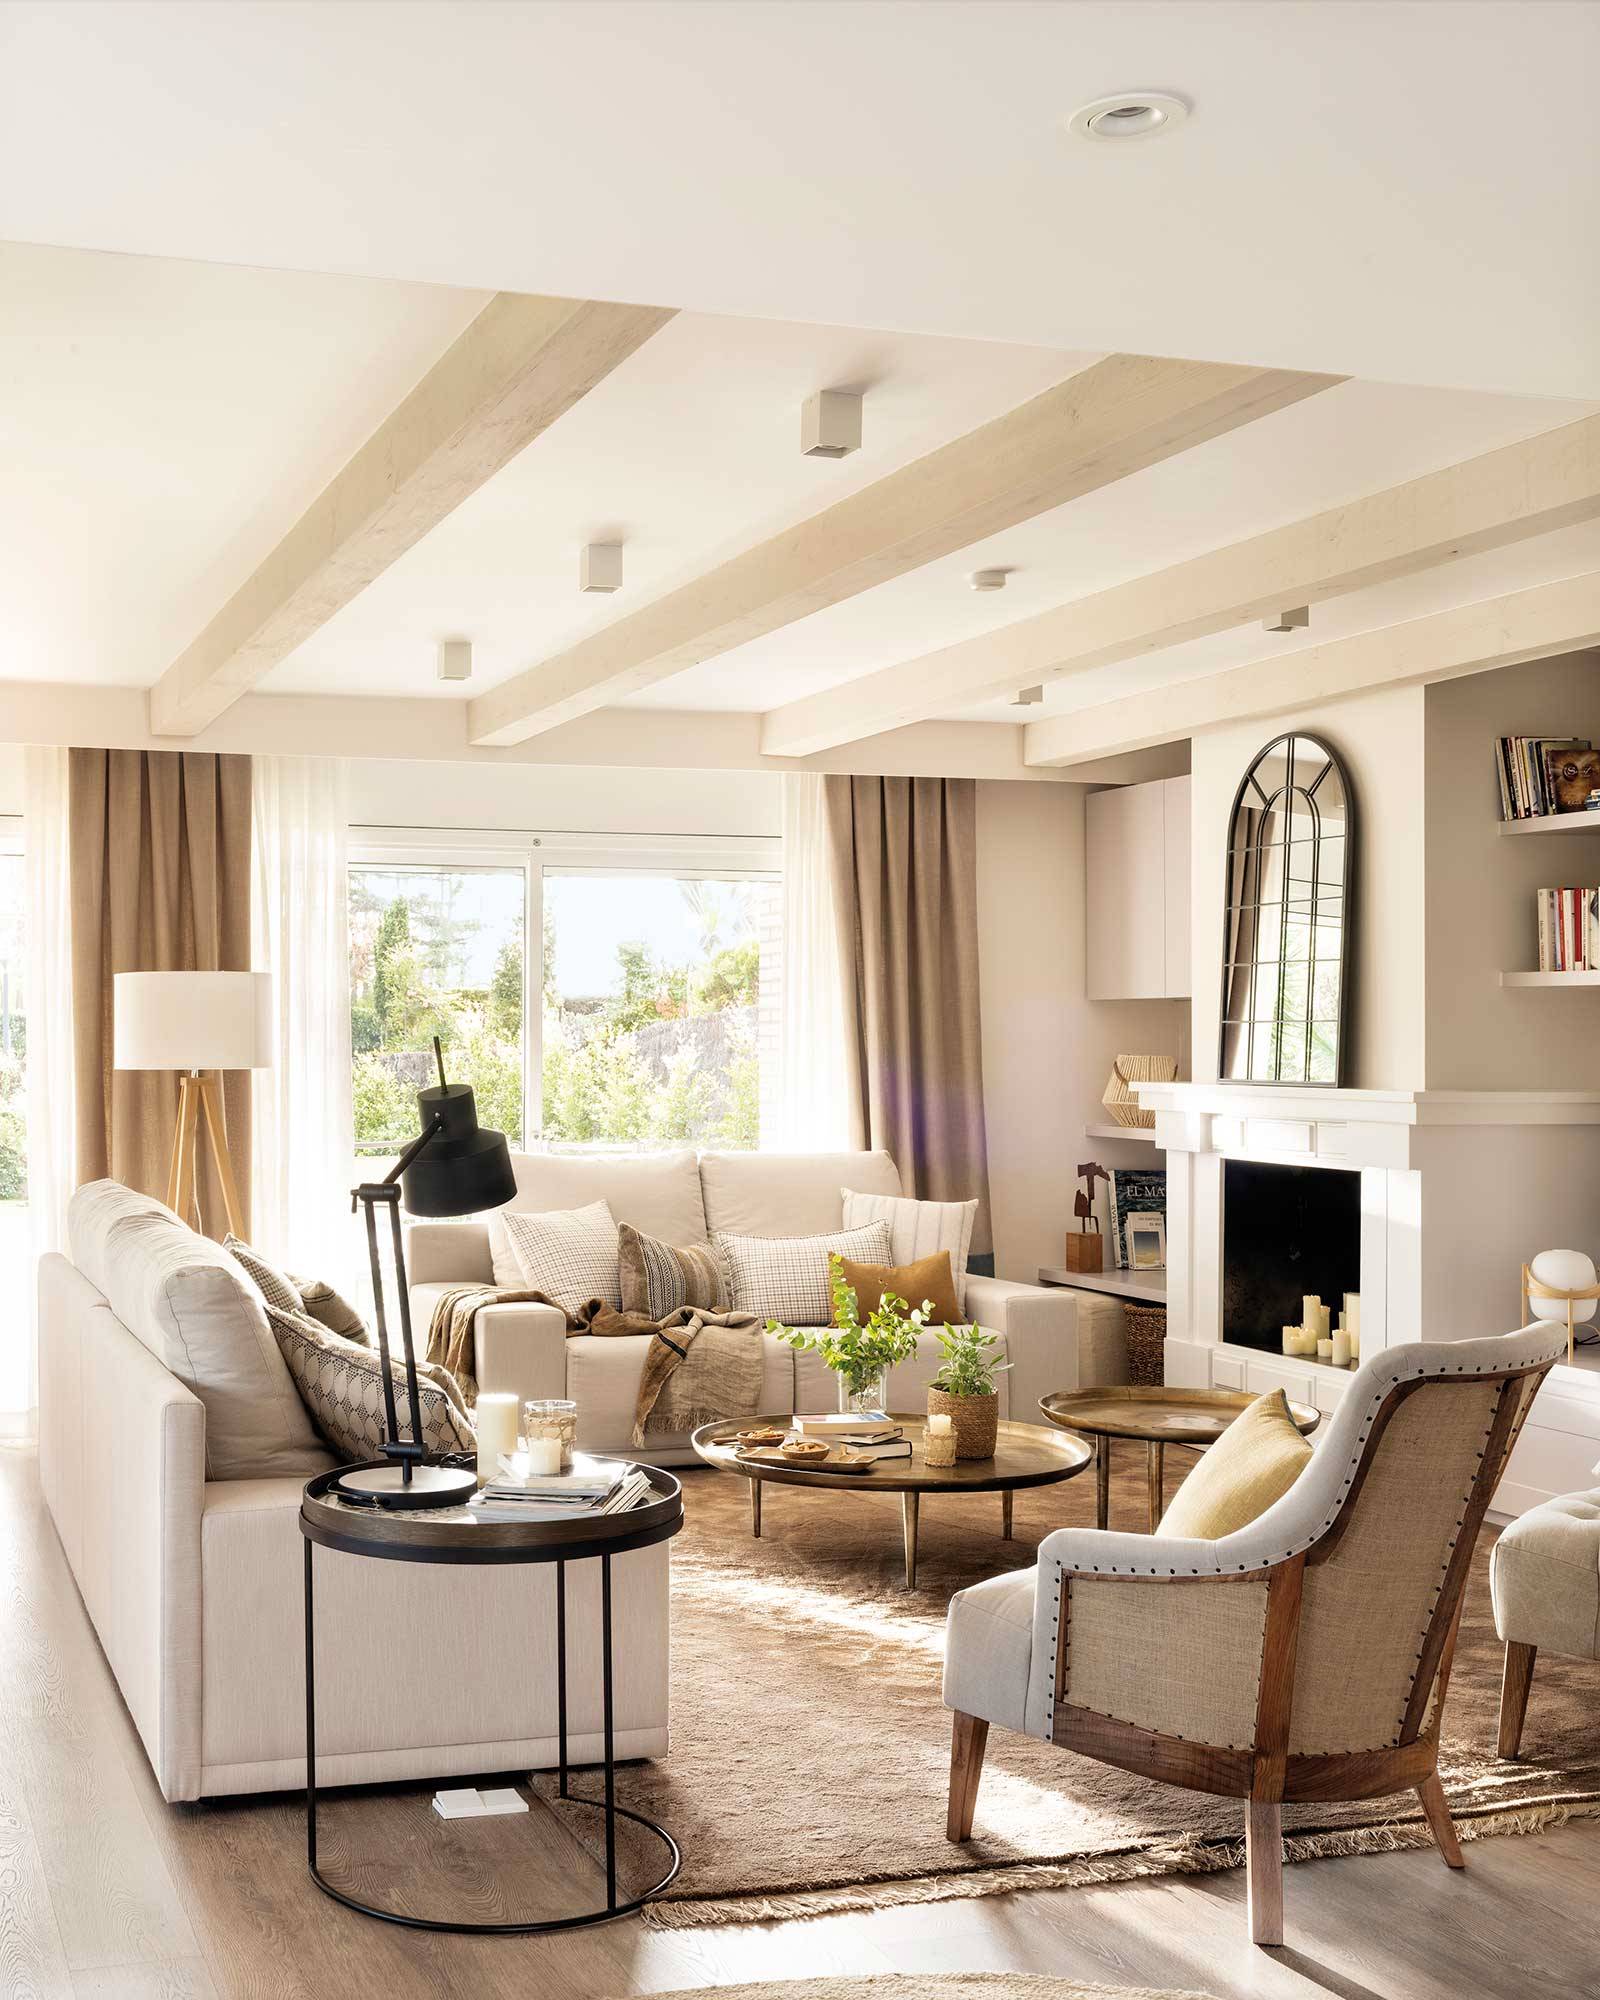 Salón con sofás blancos, butaca gris, alfombra, chimenea, espejo cuarterones y vigas en el techo. 